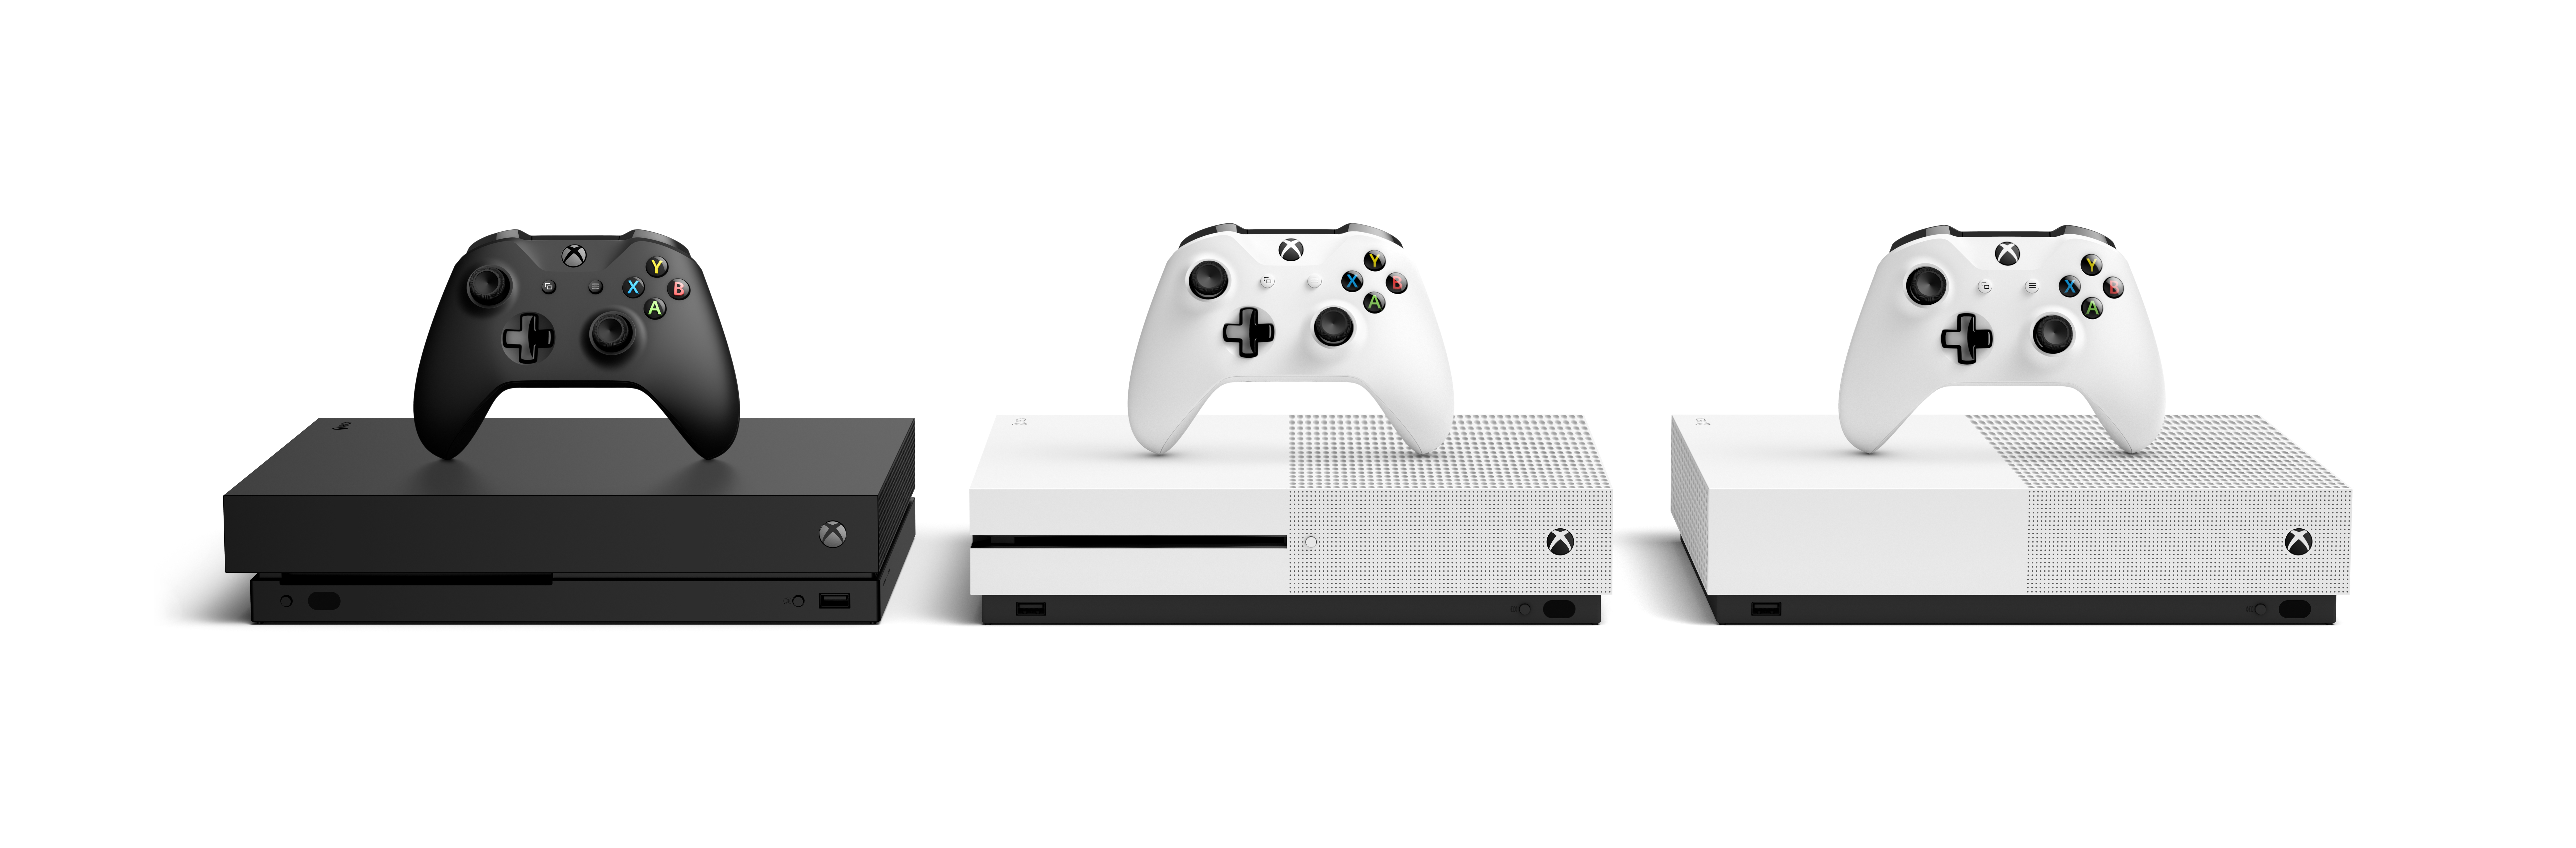 zegen Peer Kwalificatie Xbox One S All-Digital Edition: Release Date, Specs, Price, And More -  GameSpot